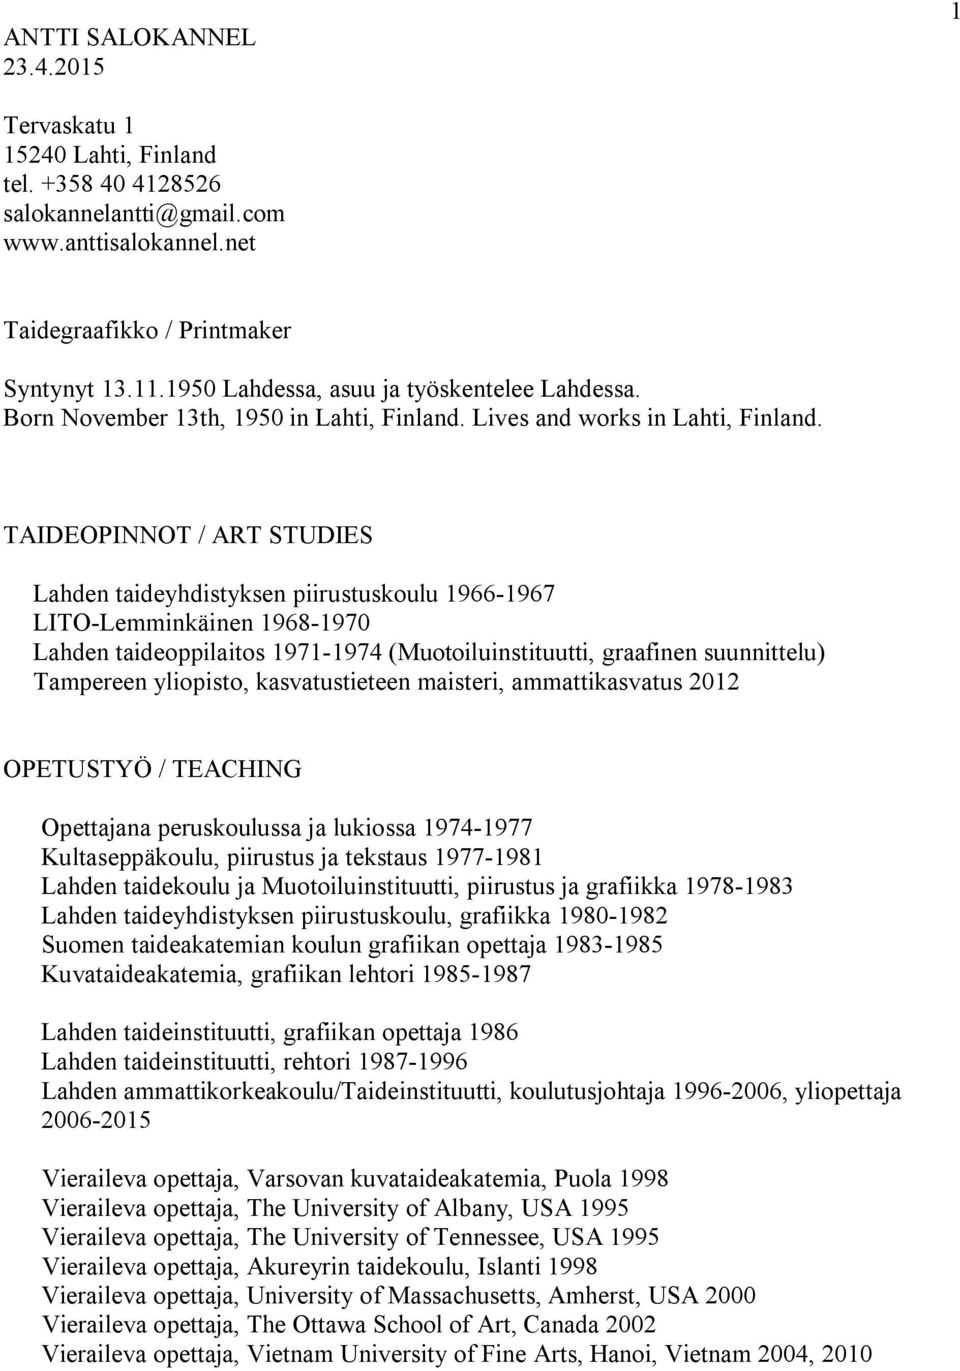 TAIDEOPINNOT / ART STUDIES Lahden taideyhdistyksen piirustuskoulu 1966-1967 LITO-Lemminkäinen 1968-1970 Lahden taideoppilaitos 1971-1974 (Muotoiluinstituutti, graafinen suunnittelu) Tampereen